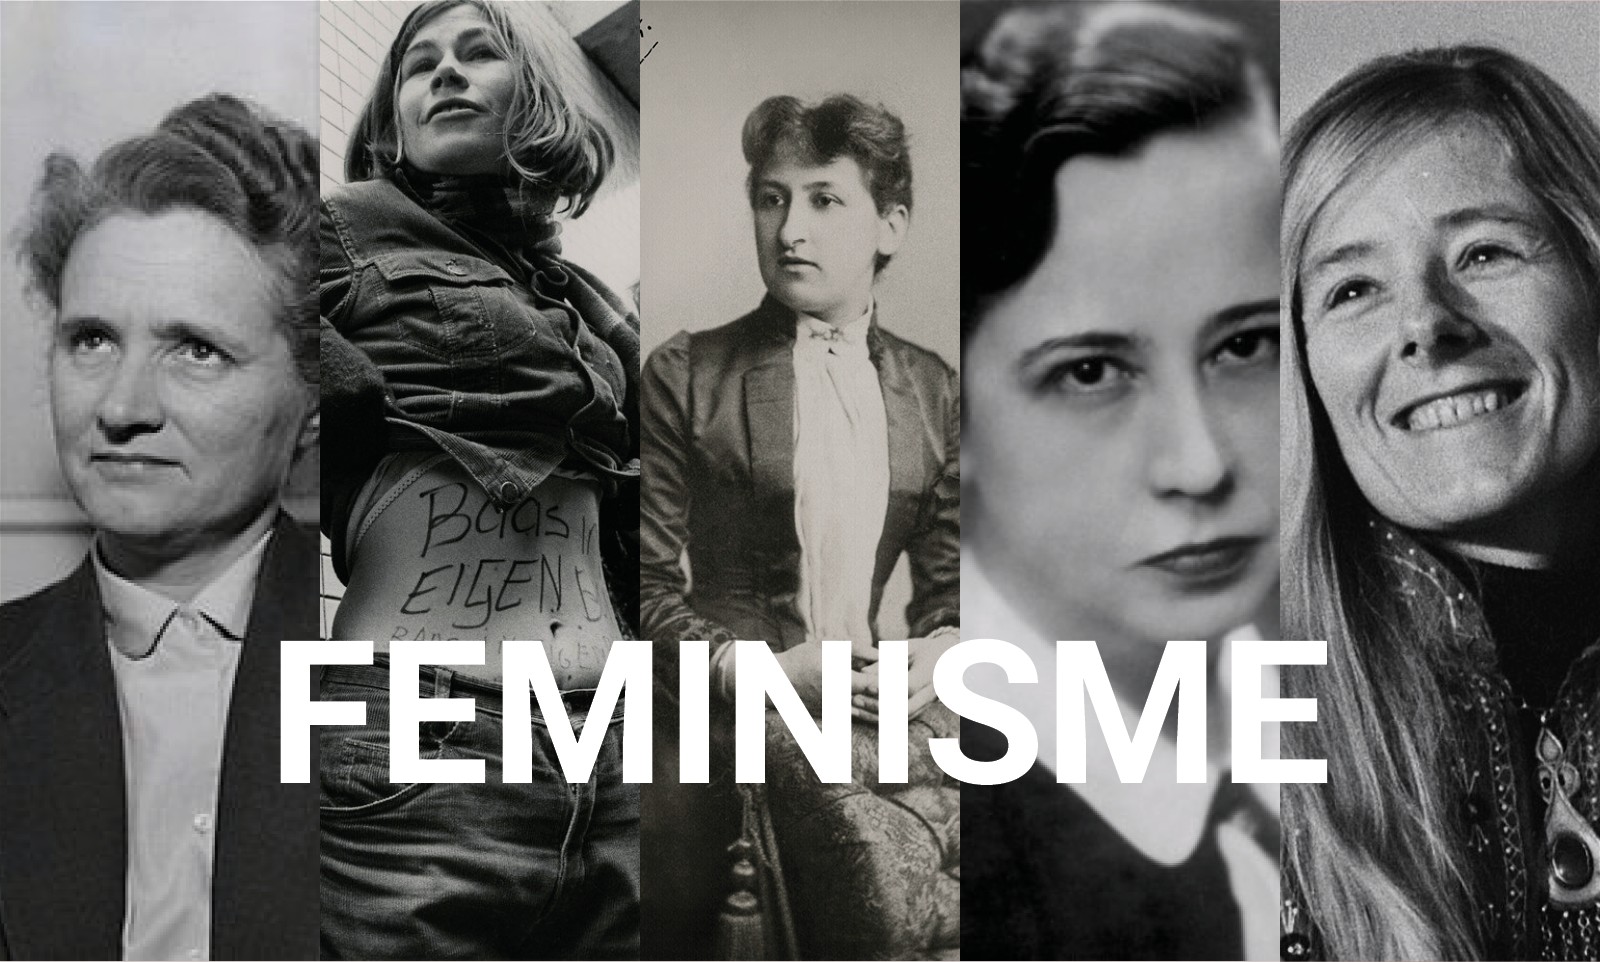 Dit zijn 5 inspirerende vrouwen uit de Nederlandse geschiedenis